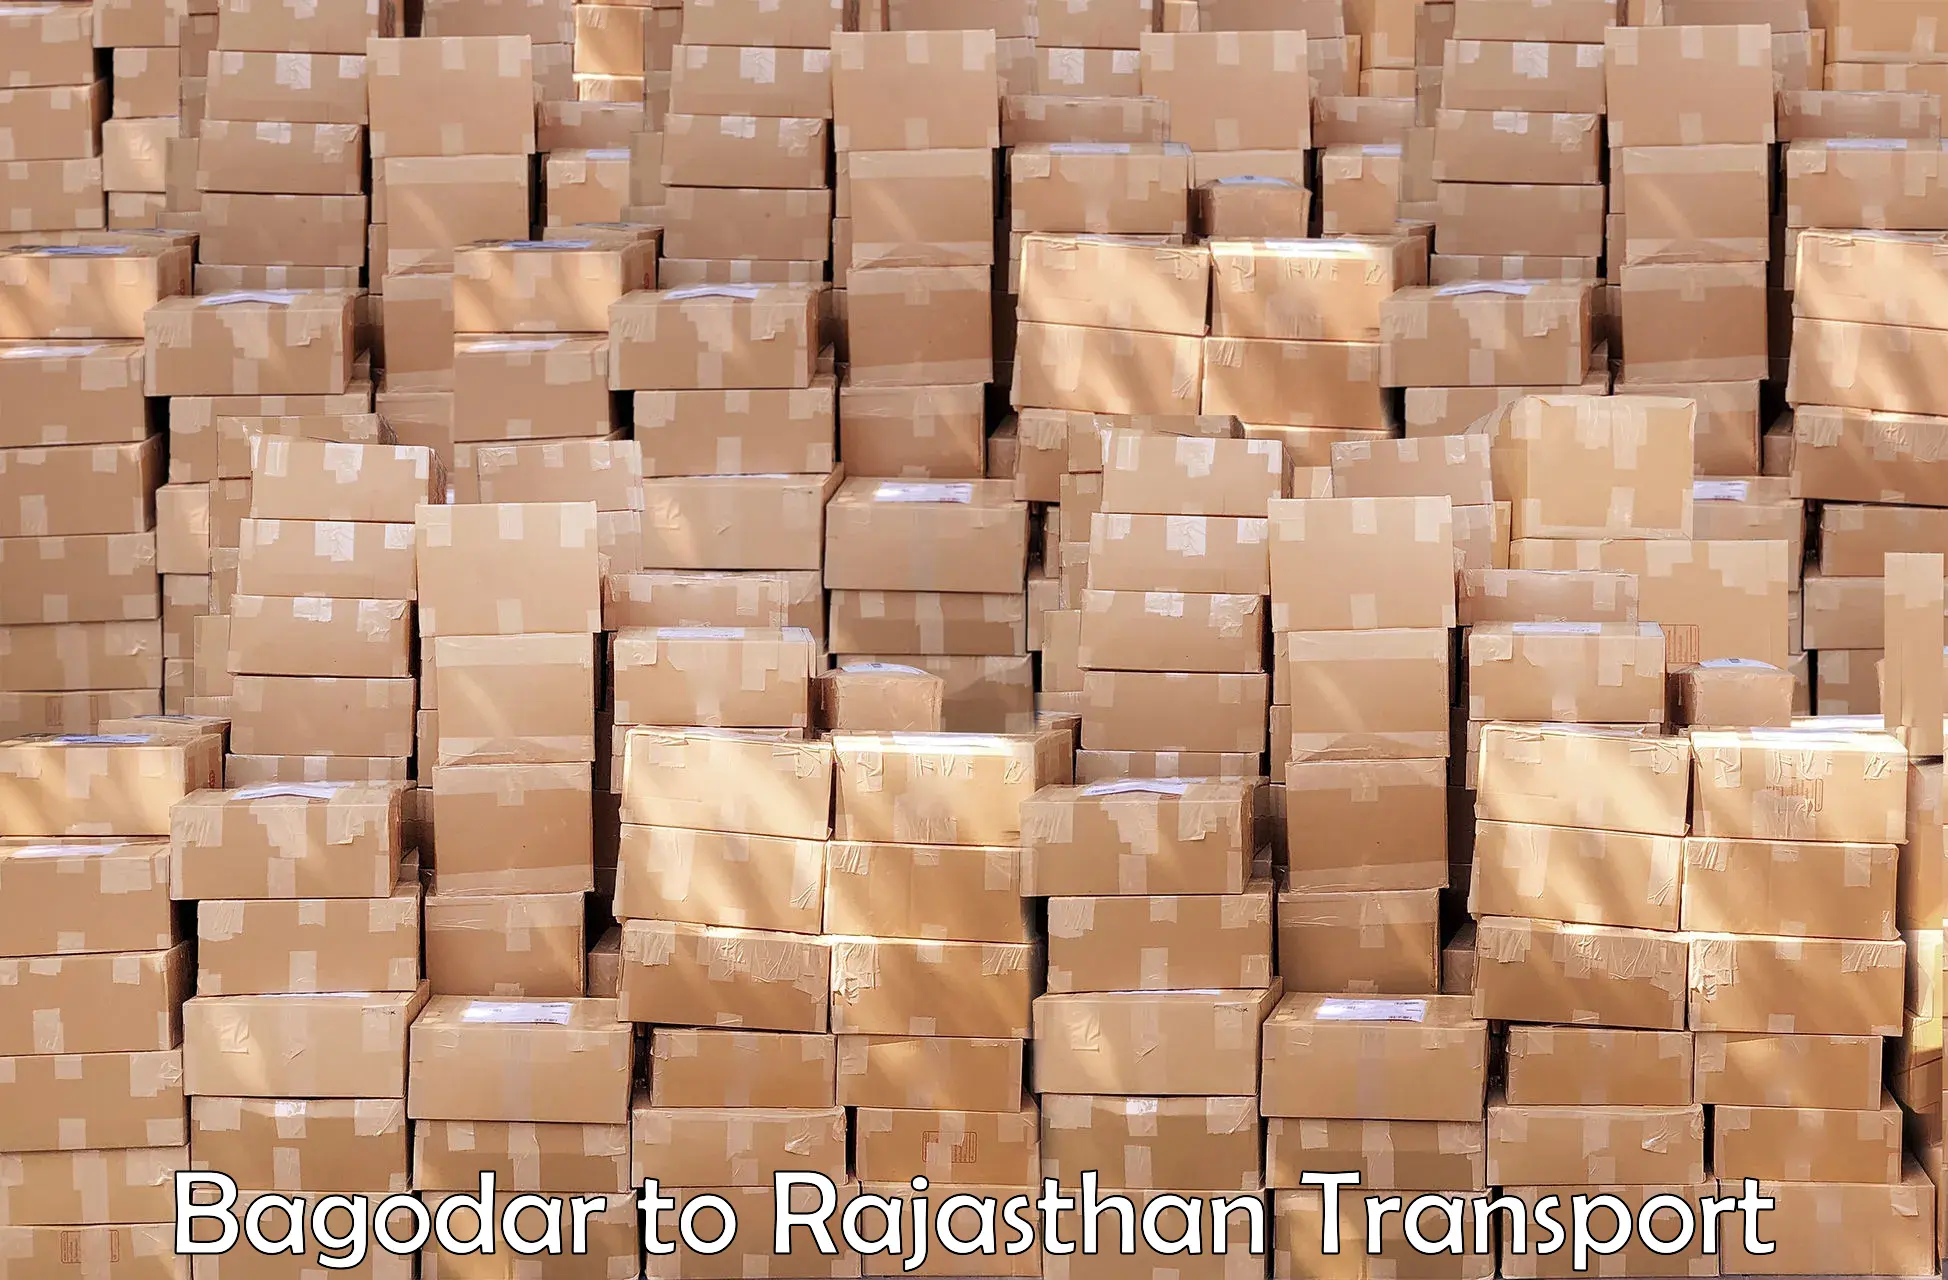 All India transport service Bagodar to Fatehpur Sikar